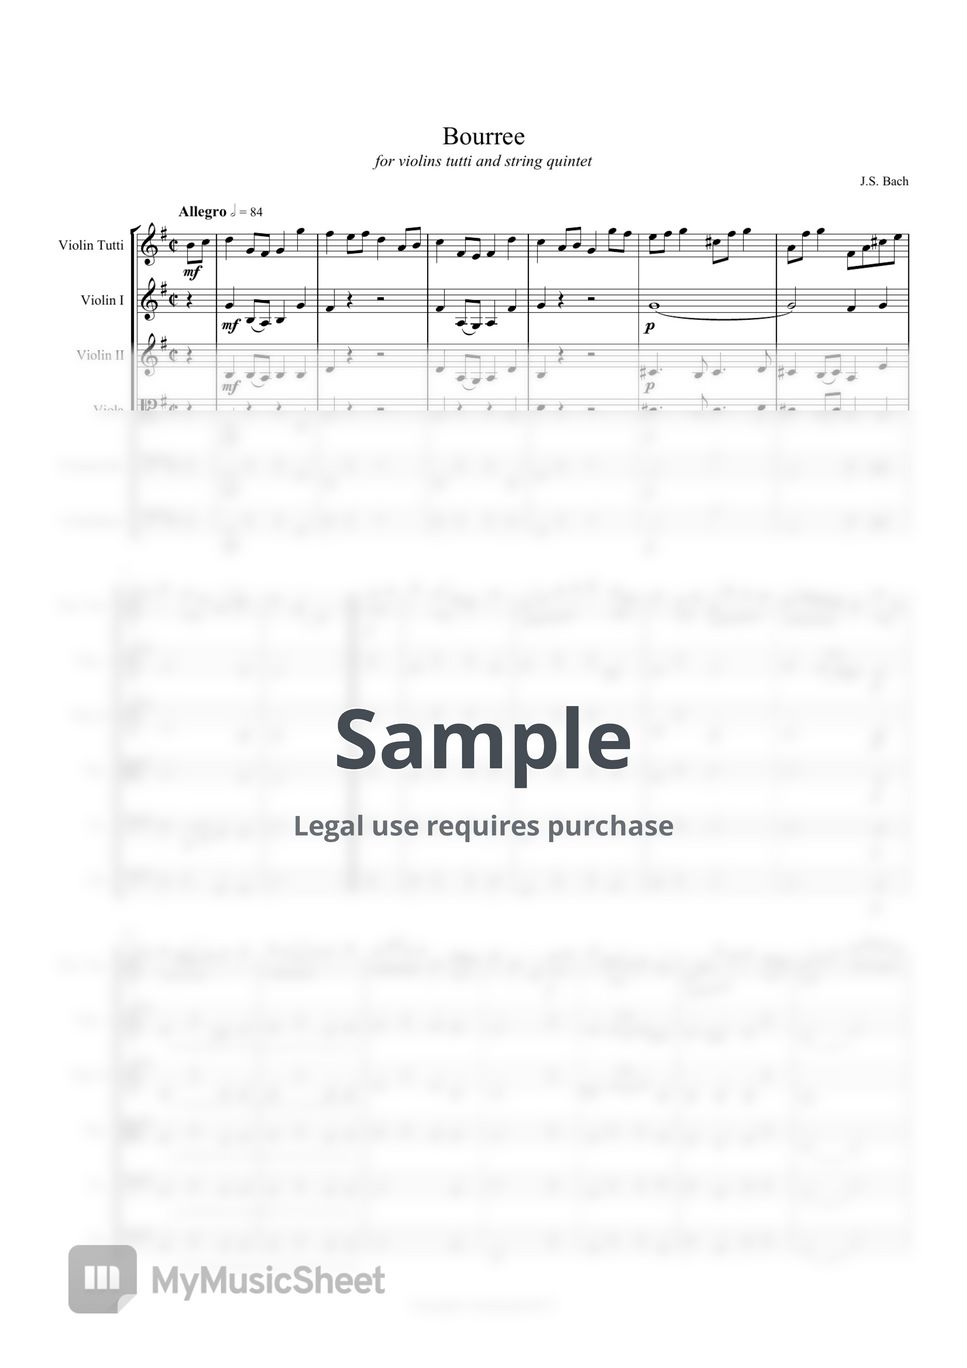 J. S. Bach - Bourree by Lingga Lasarda